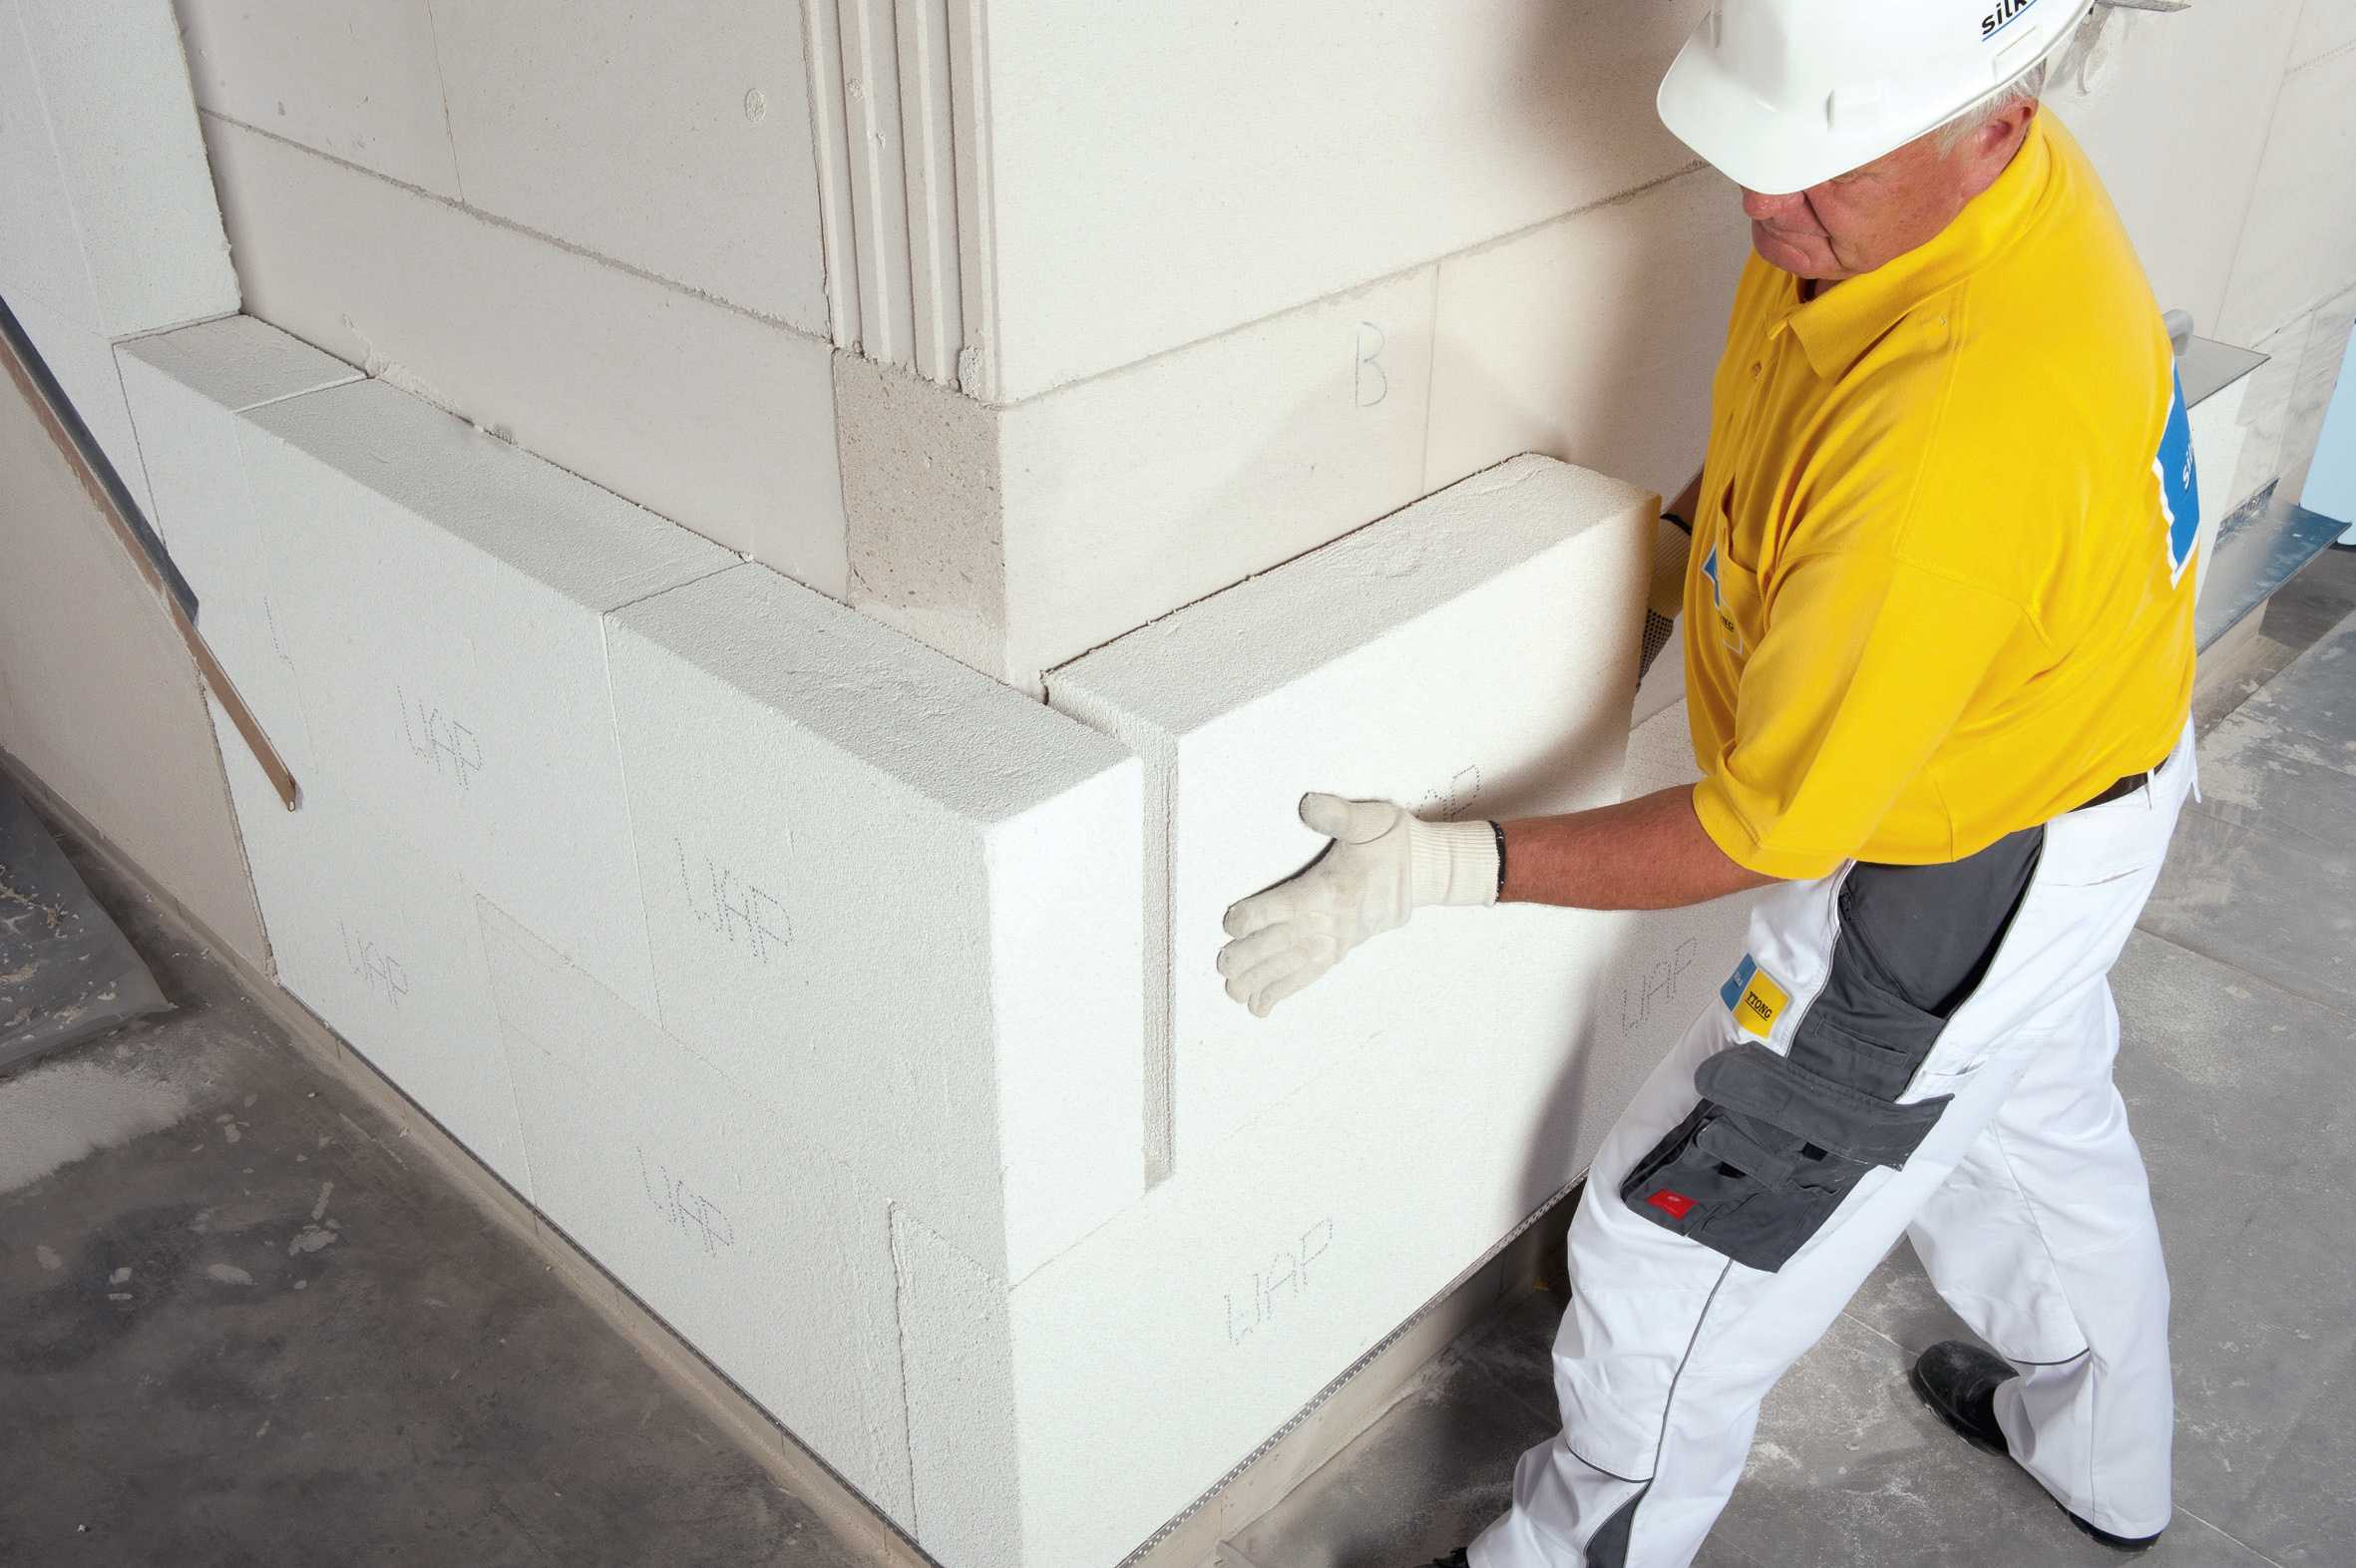 Утепление стен пенопластом: нюансы, материалы, вентиляция, инструкция по работе под штукатурку